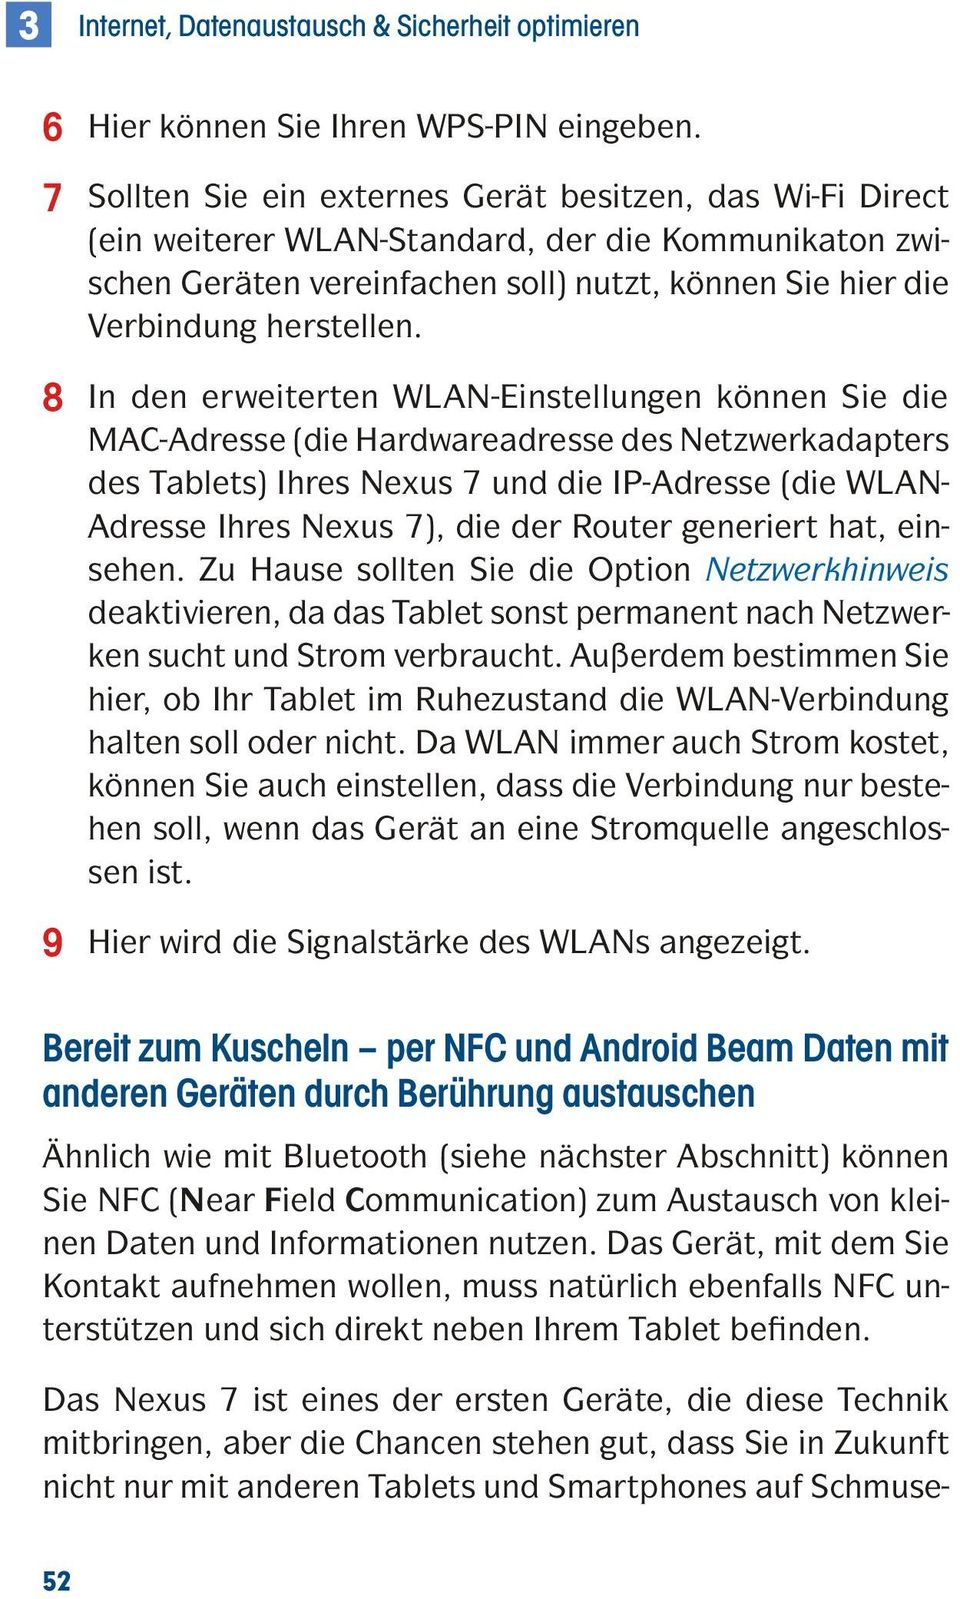 8 In den erweiterten WLAN-Einstellungen können Sie die MAC-Adresse (die Hardwareadresse des Netzwerkadapters des Tablets) Ihres Nexus 7 und die IP-Adresse (die WLAN- Adresse Ihres Nexus 7), die der